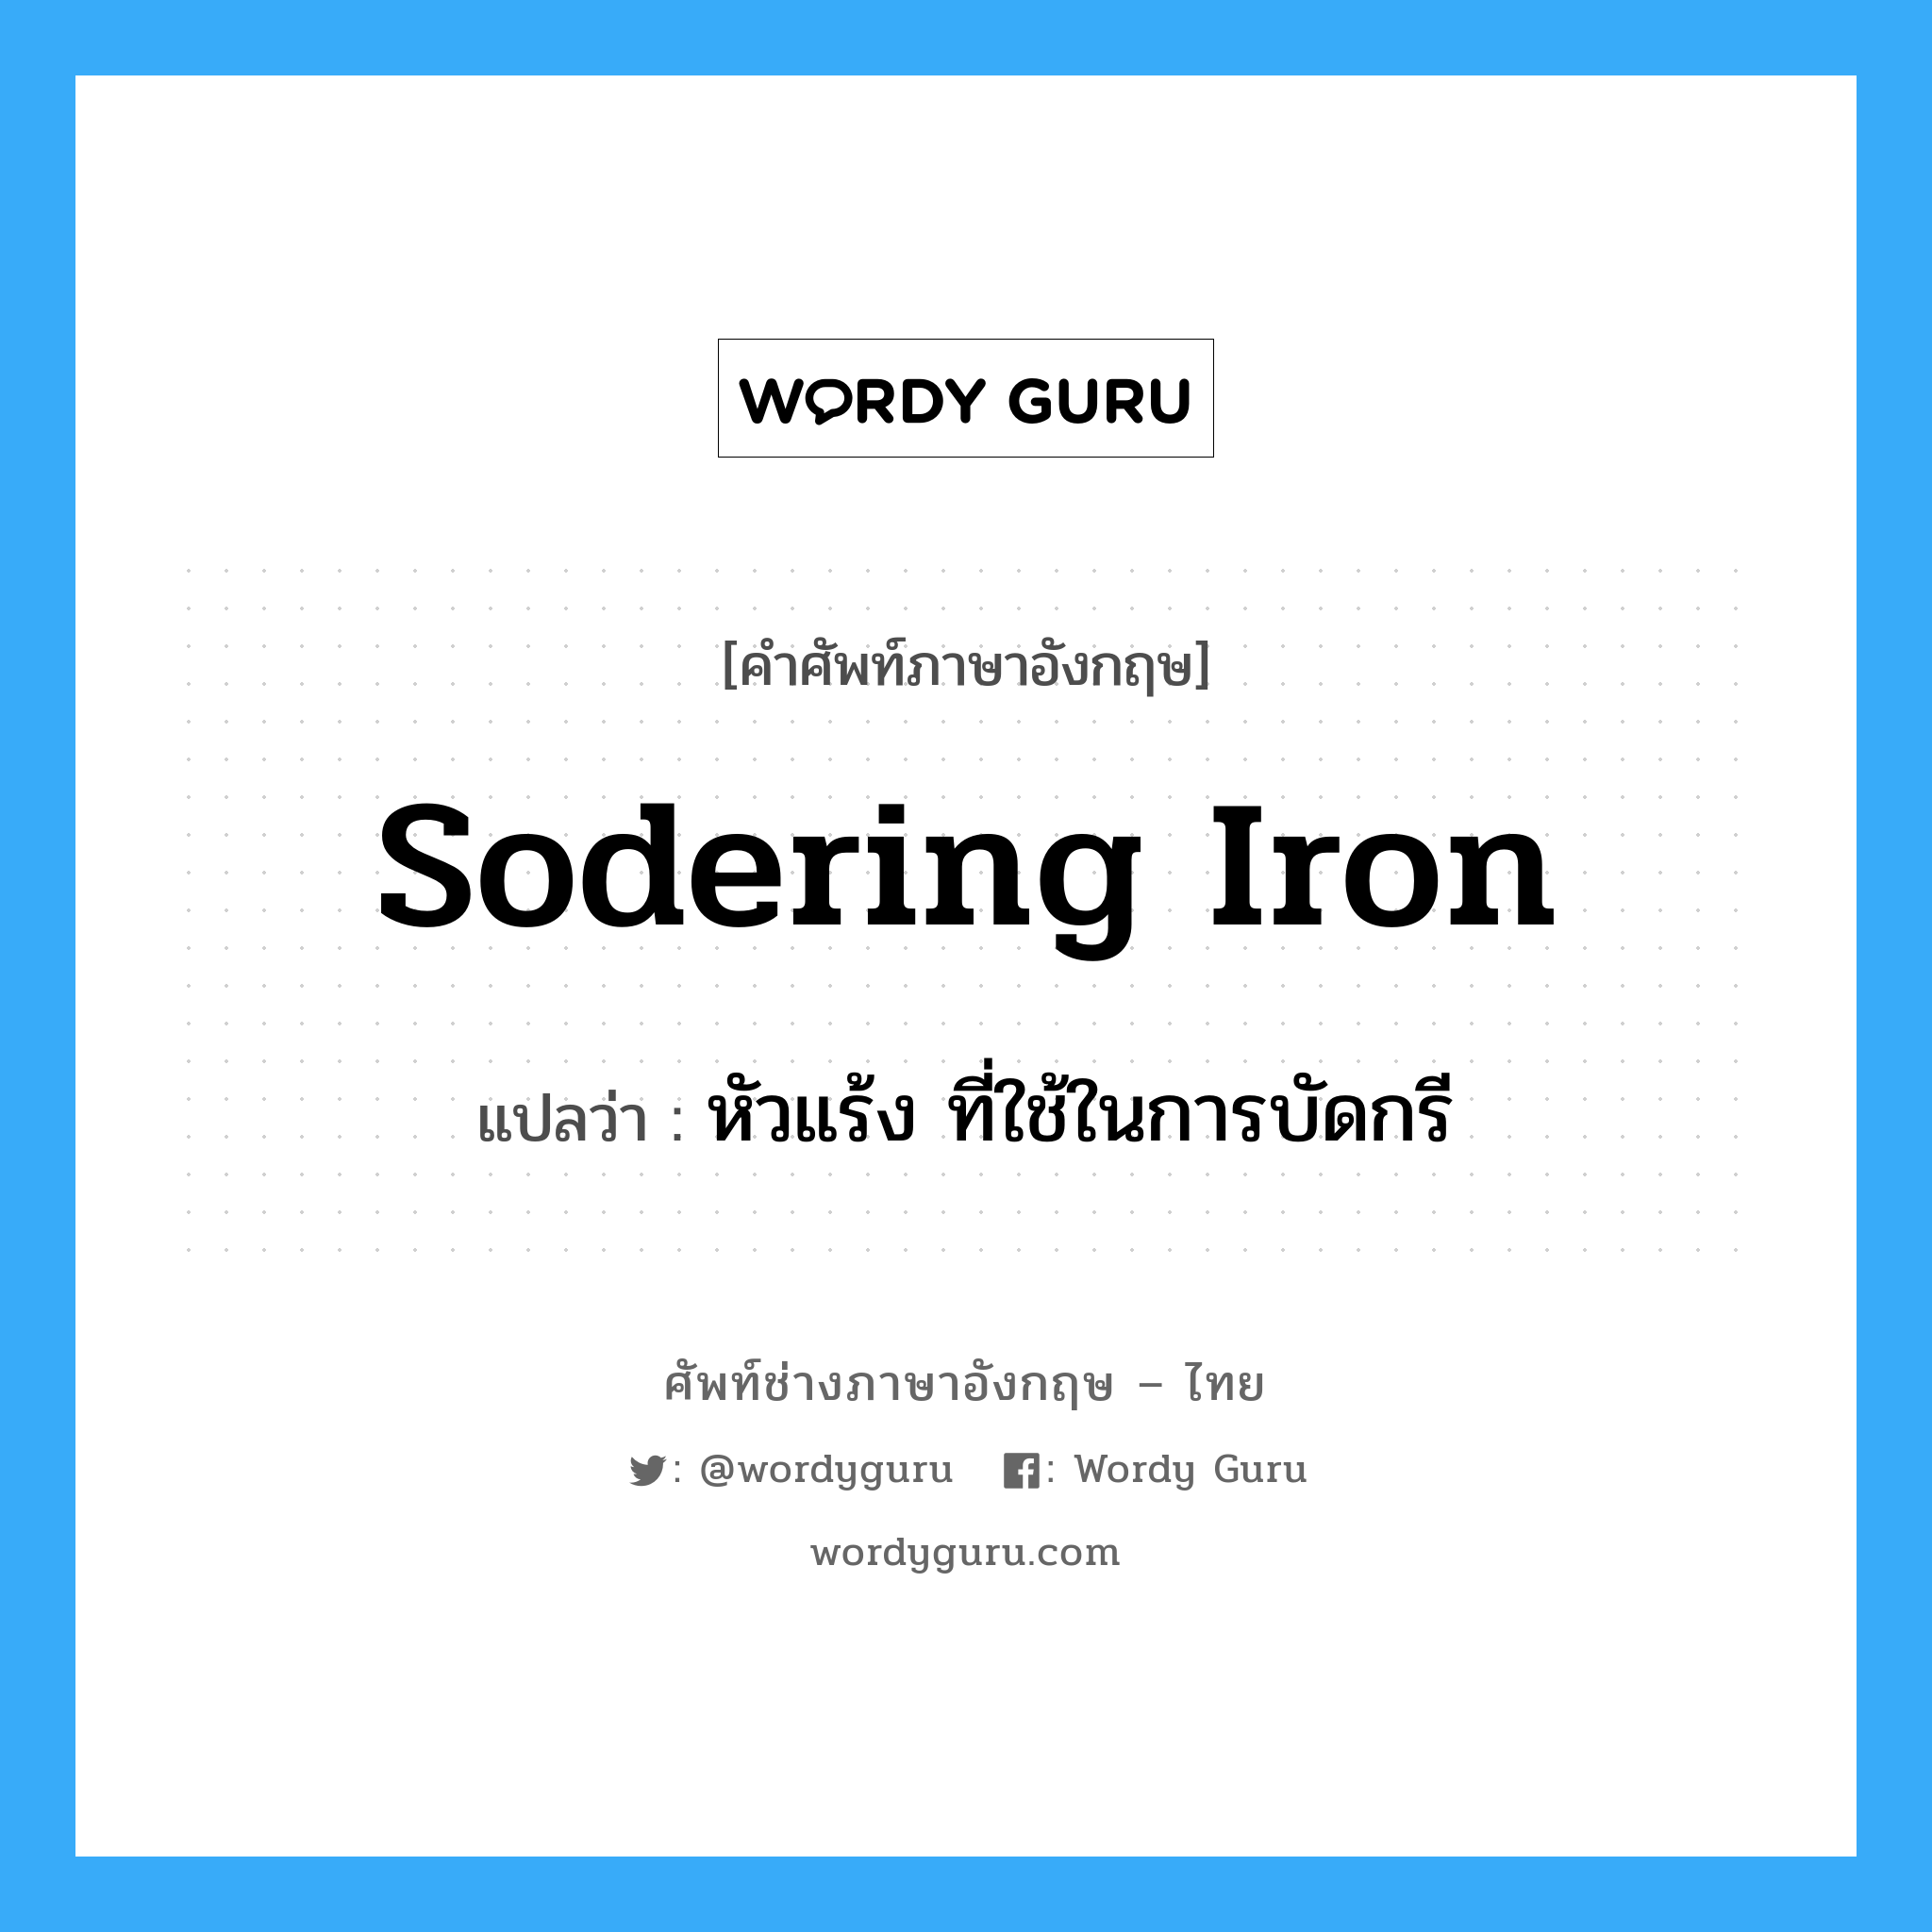 sodering iron แปลว่า?, คำศัพท์ช่างภาษาอังกฤษ - ไทย sodering iron คำศัพท์ภาษาอังกฤษ sodering iron แปลว่า หัวแร้ง ที่ใช้ในการบัดกรี